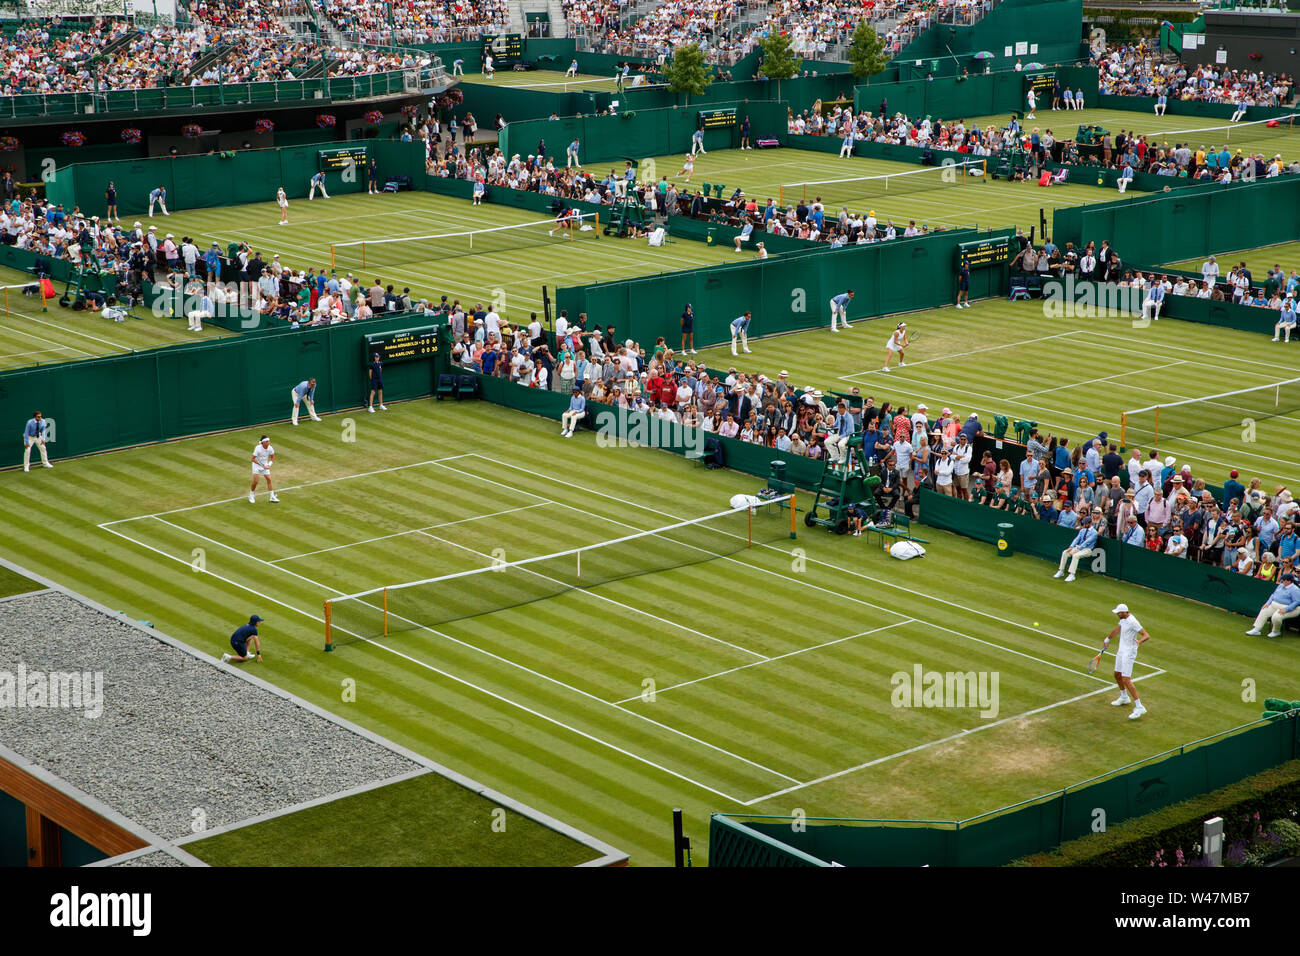 Vue générale au Wimbledon Championships 2019. Tenue à l'All England Lawn Tennis Club, Wimbledon. Banque D'Images